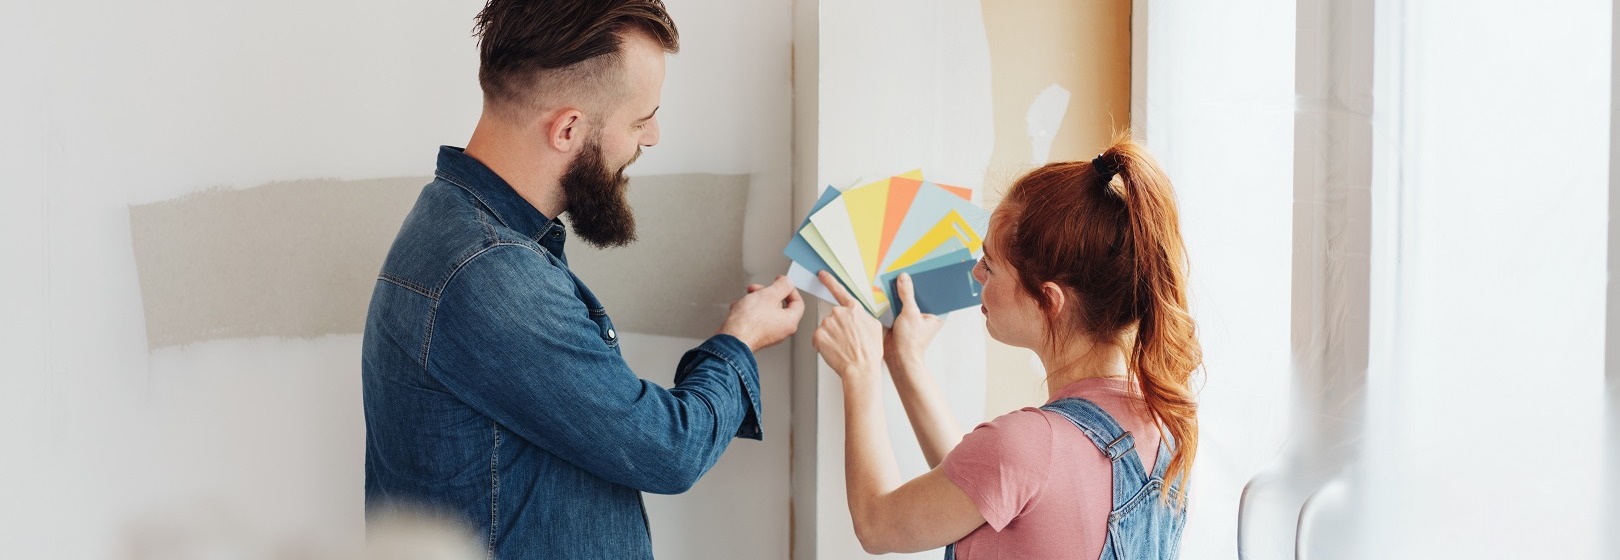 mężczyzna i kobieta wybierają kolory na ścianę